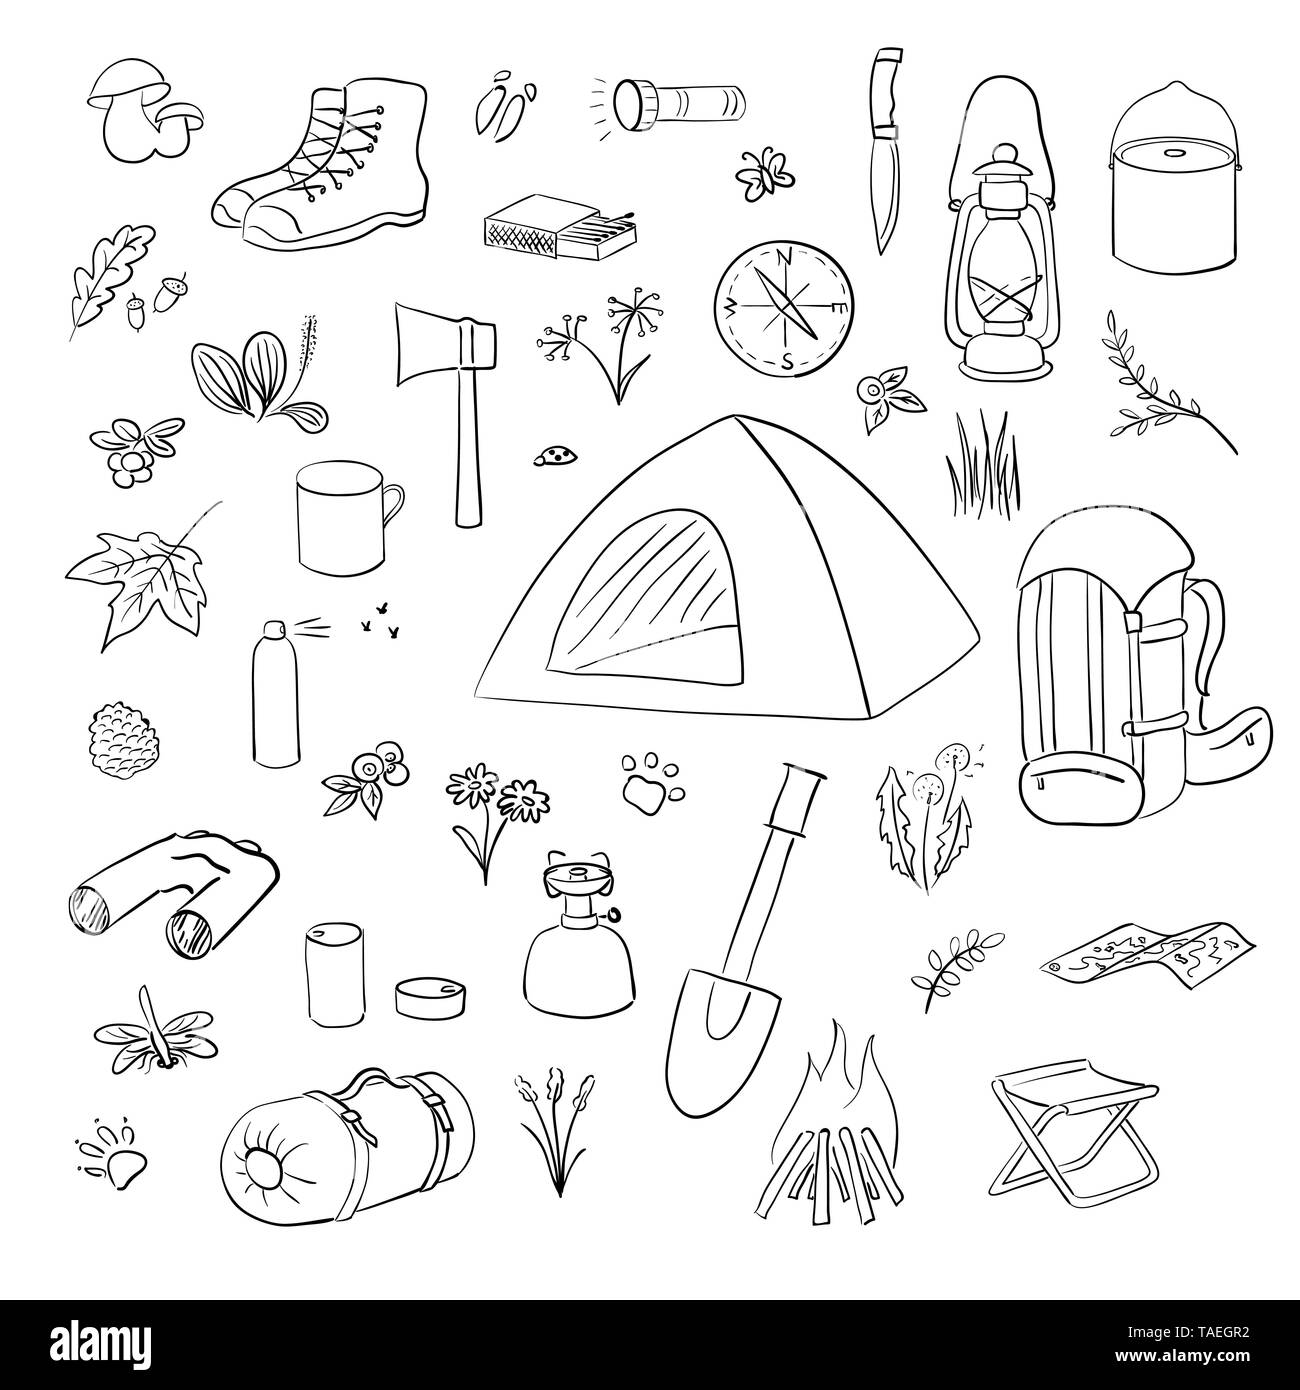 Equipo de camping de senderismo equipo de campamento base y accesorios al  aire libre Vector de stock por ©tigatelu 167295108